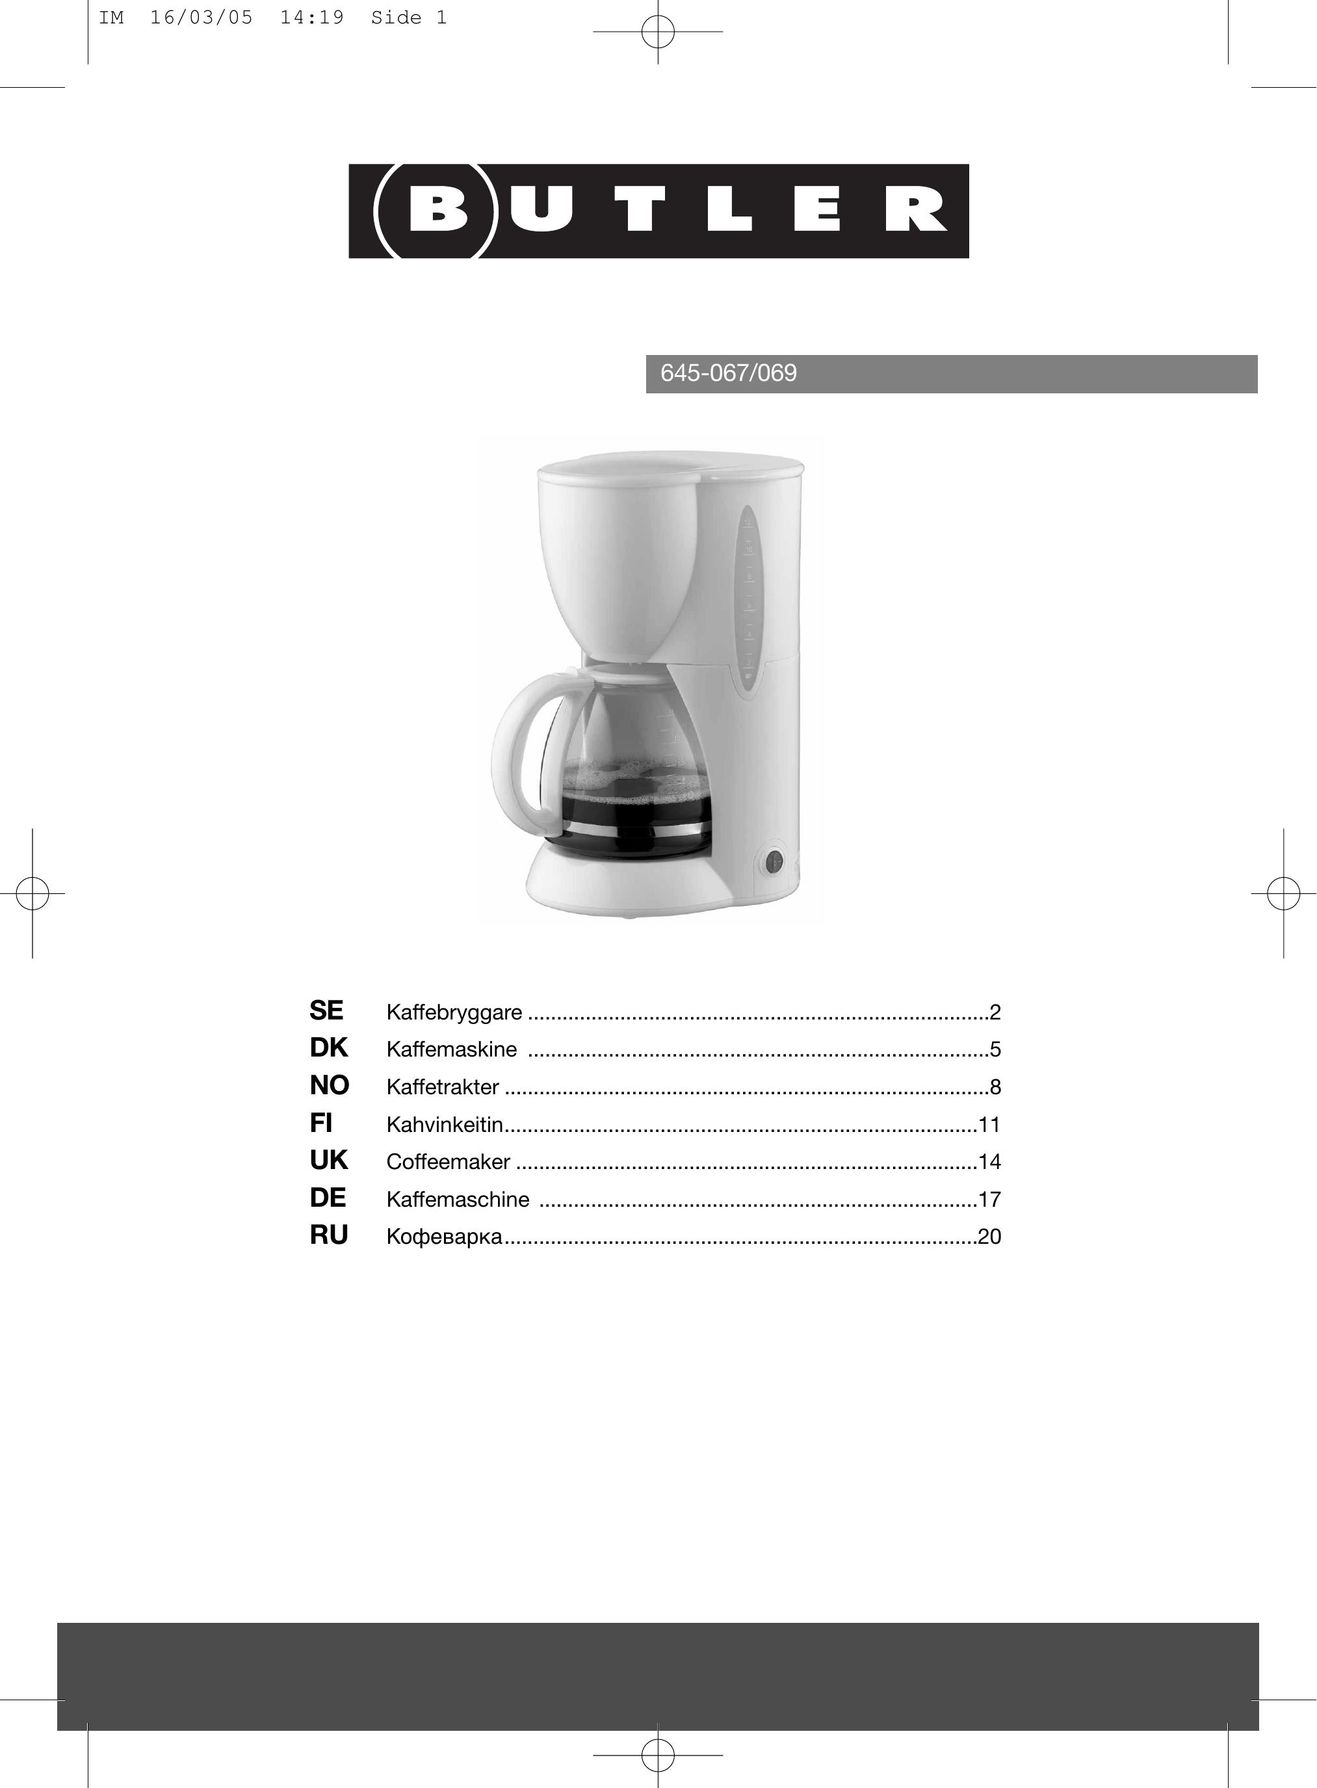 Butler 645-069 Coffeemaker User Manual